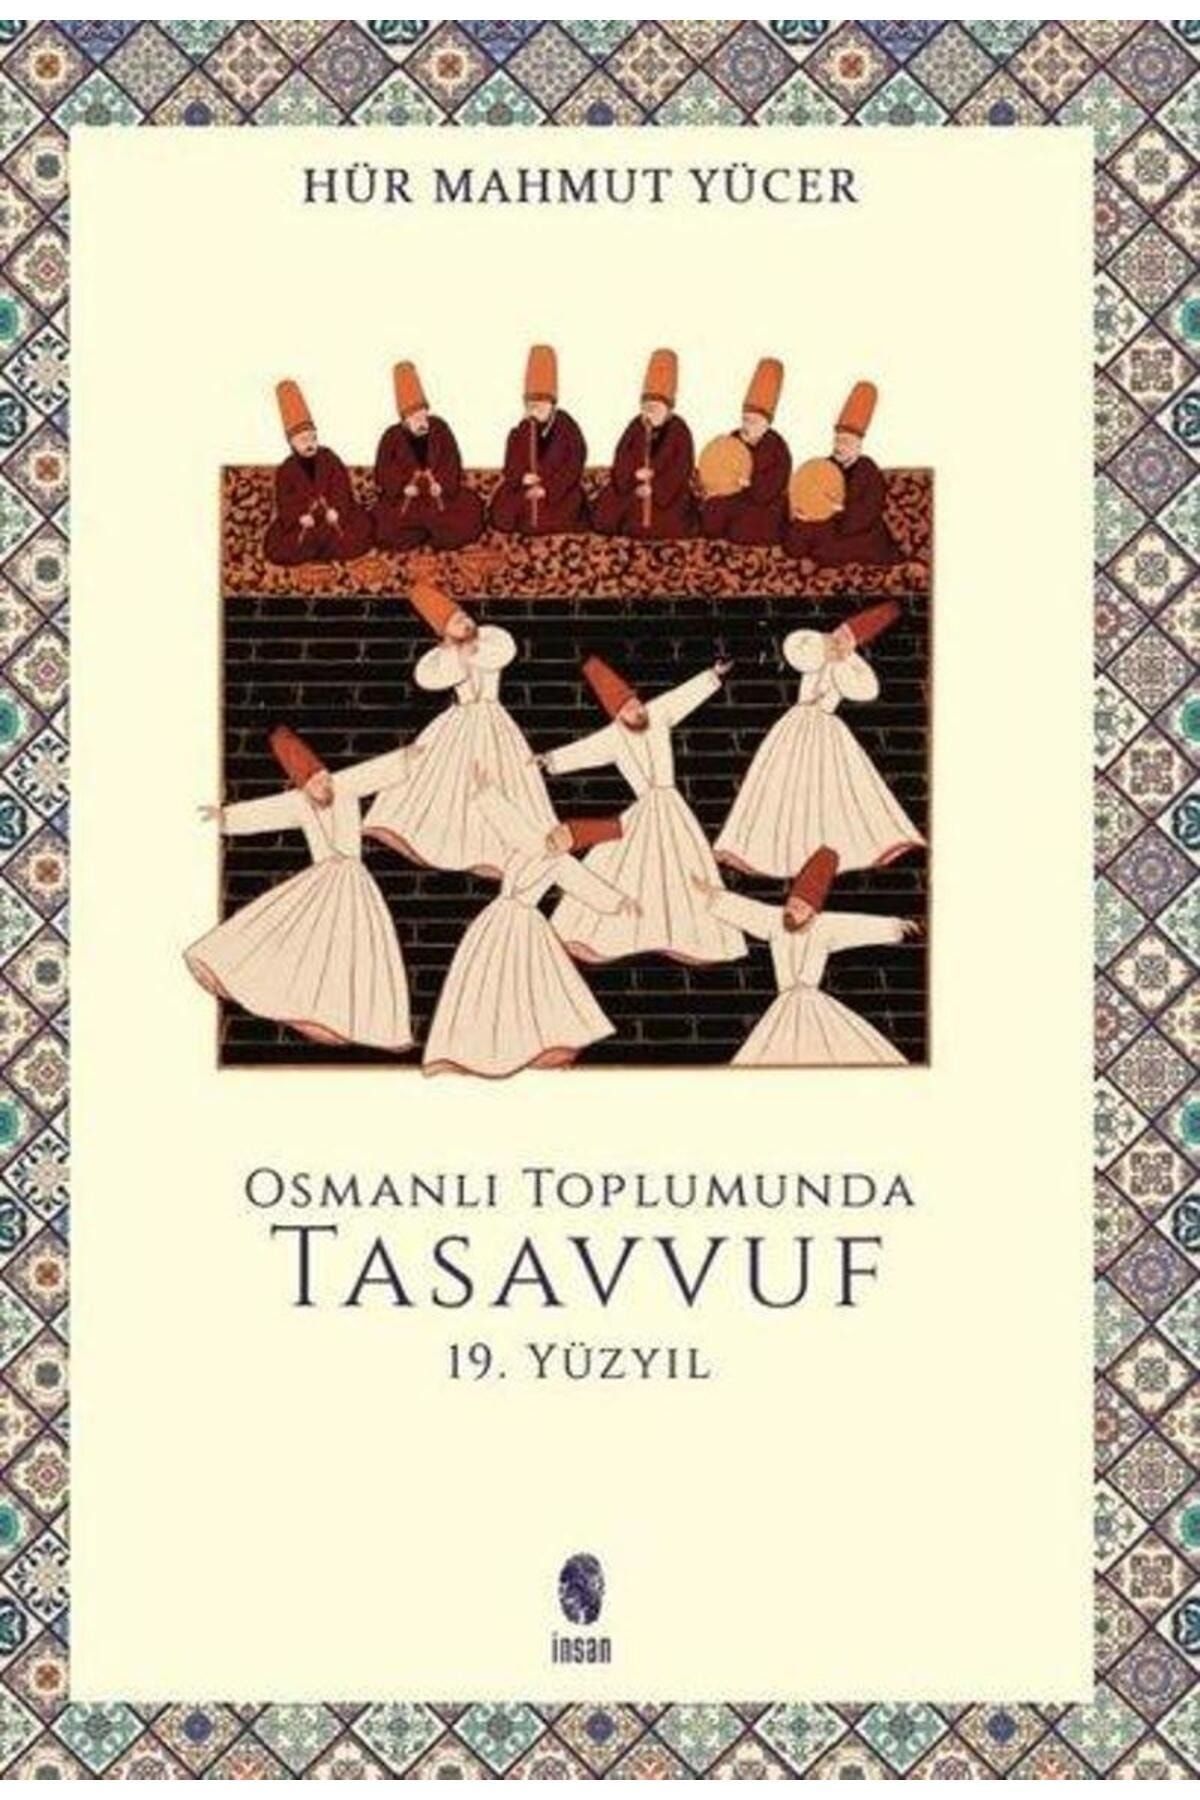 İnsan Yayınları Osmanlı Toplumunda Tasavvuf 19. Yüzyıl